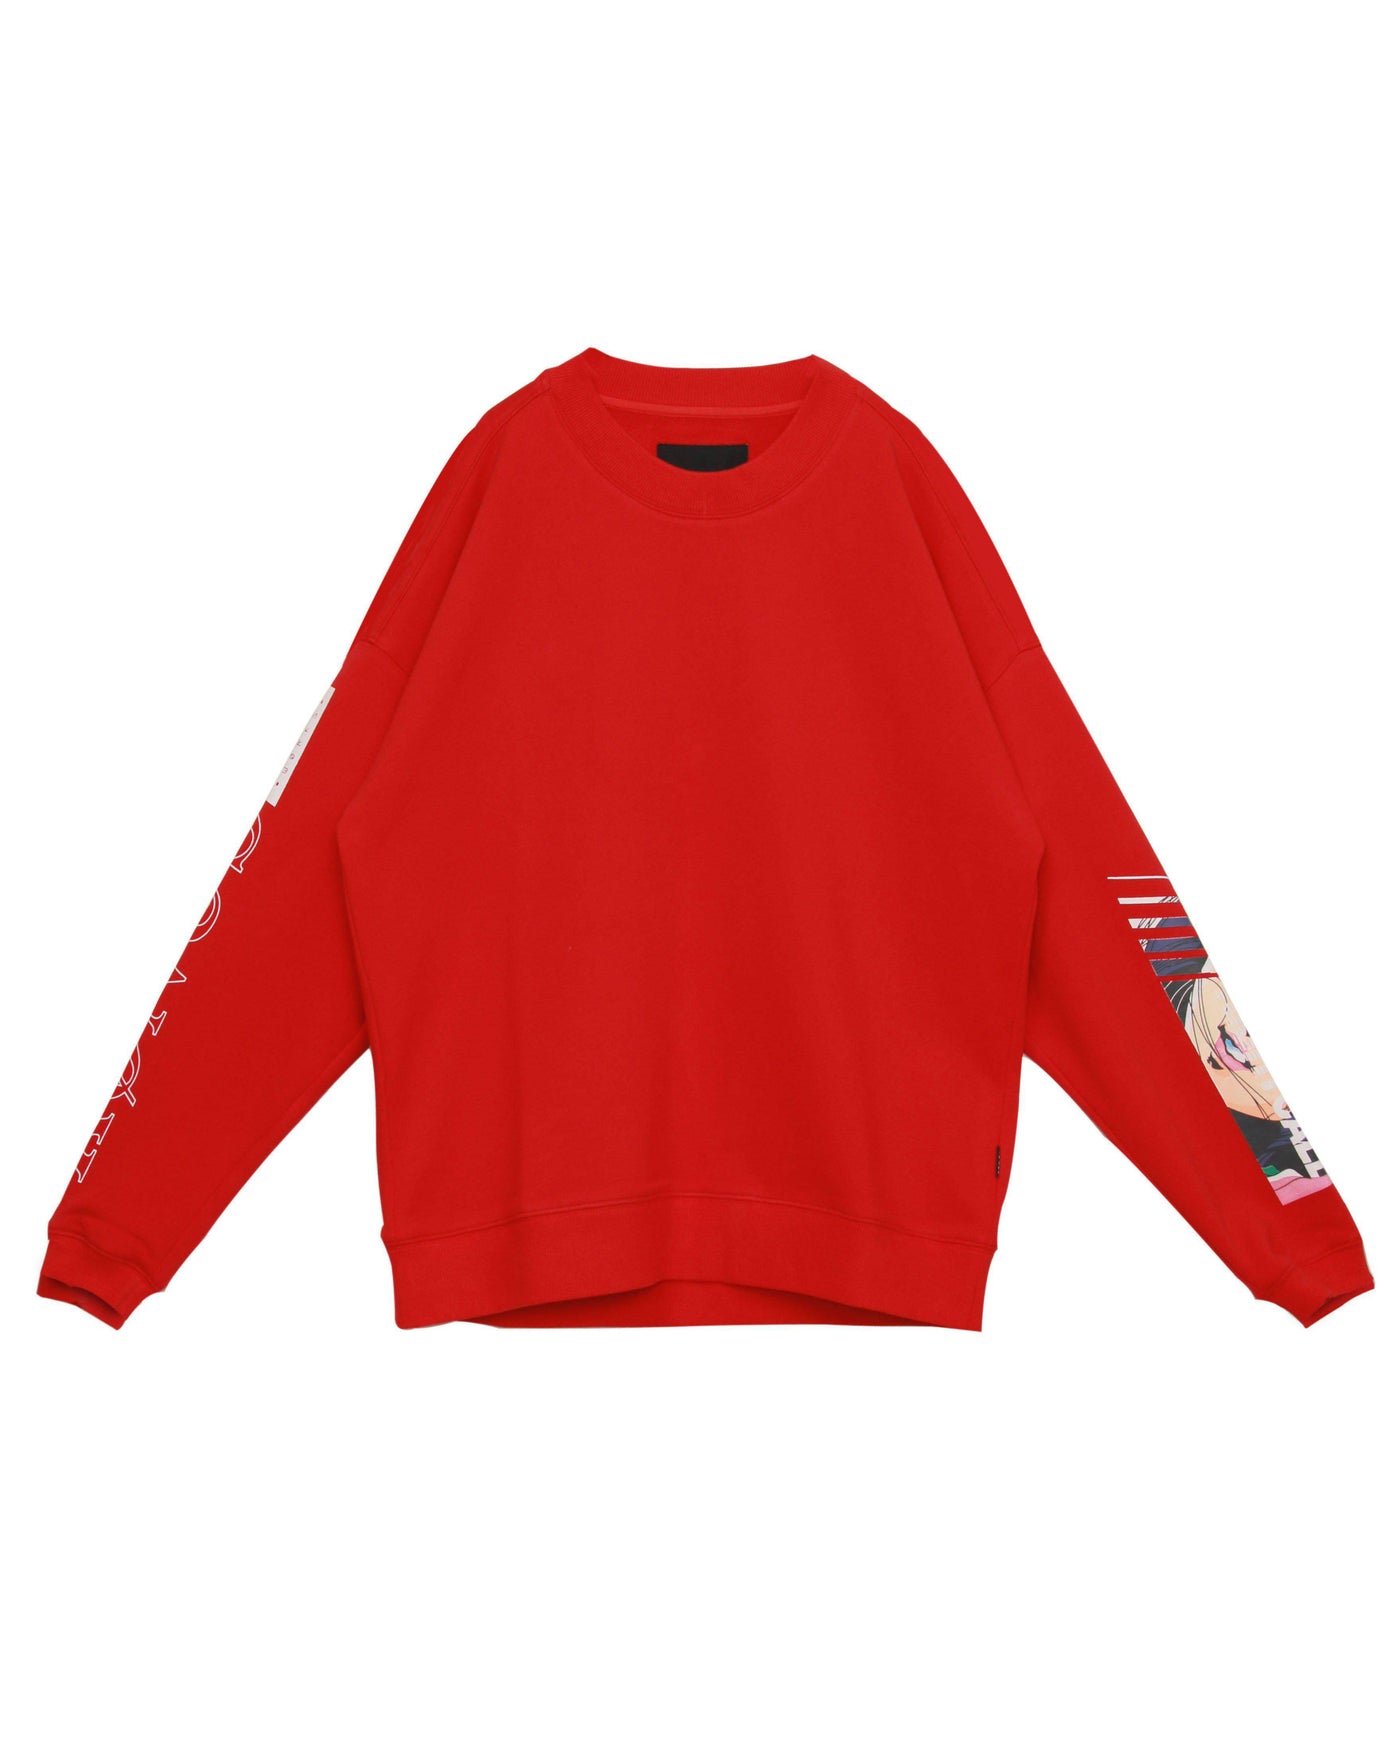 Konus Men's Oversize Sweatshirt in Red by Shop at Konus